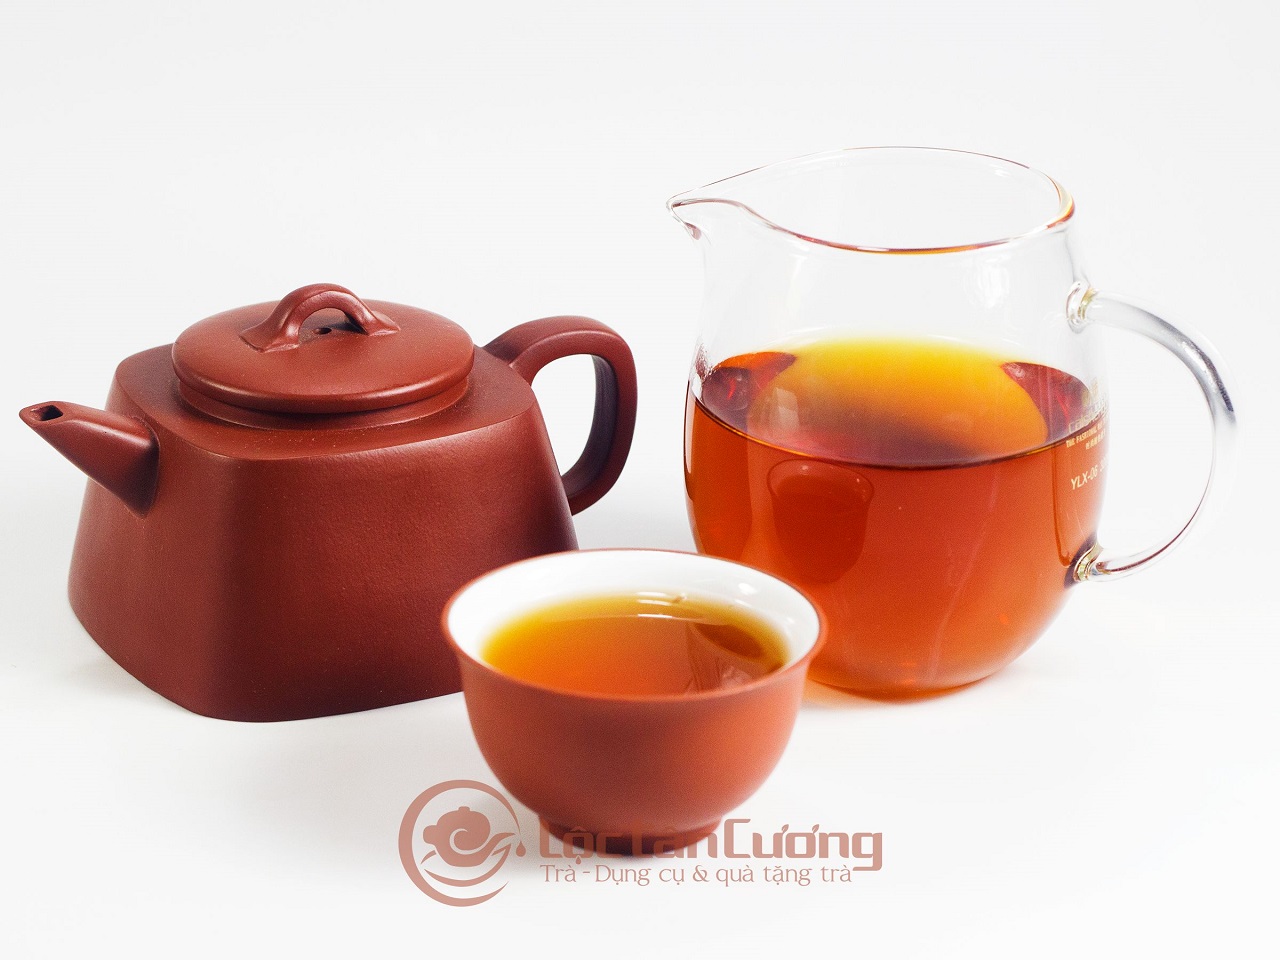 Hồng Shan Trà Hà Giang hay Hồng Trà Hà Giang là loại trà được lấy nguyên liệu từ búp trà 1 tôm 1 lá non của cây chè cổ thụ trên 200 năm tuổi tại núi Tây Côn Lĩnh, tỉnh Hà Giang